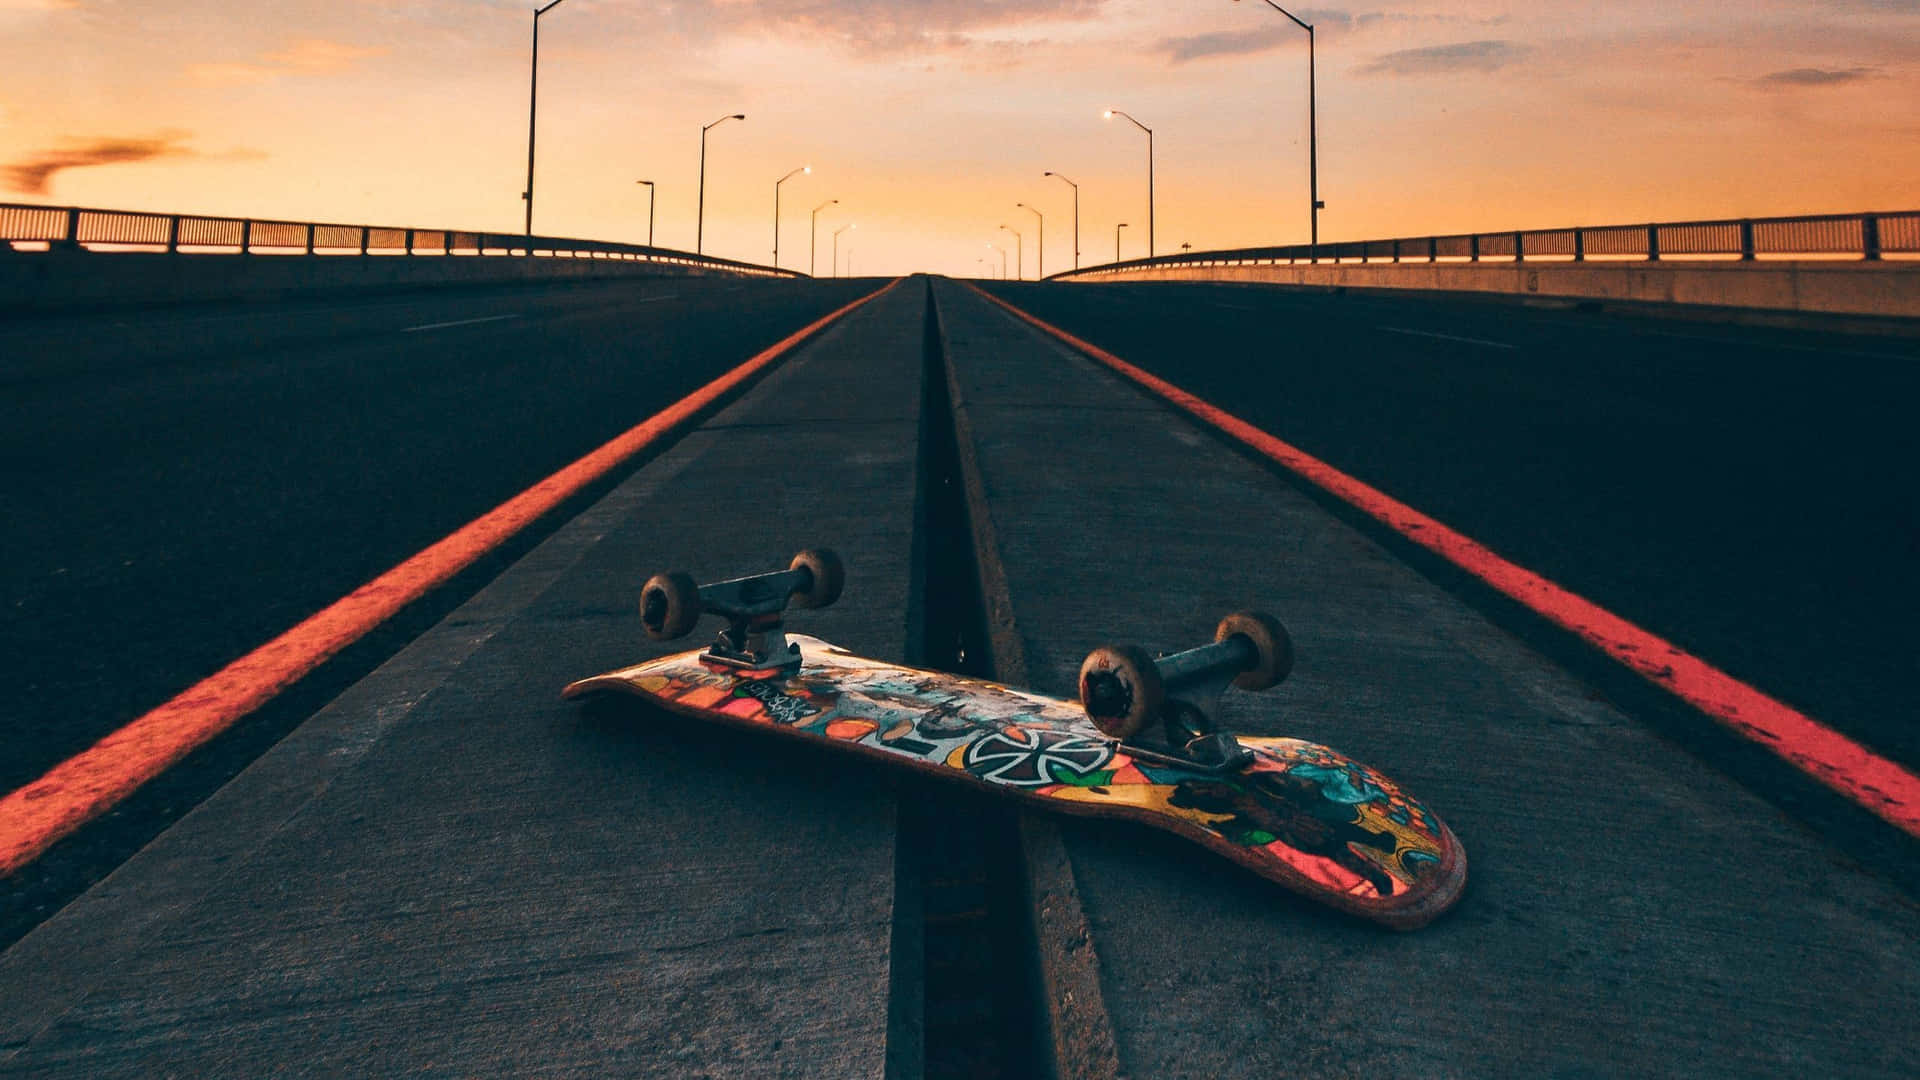 Sunset Skateboardon Deserted Road.jpg Wallpaper